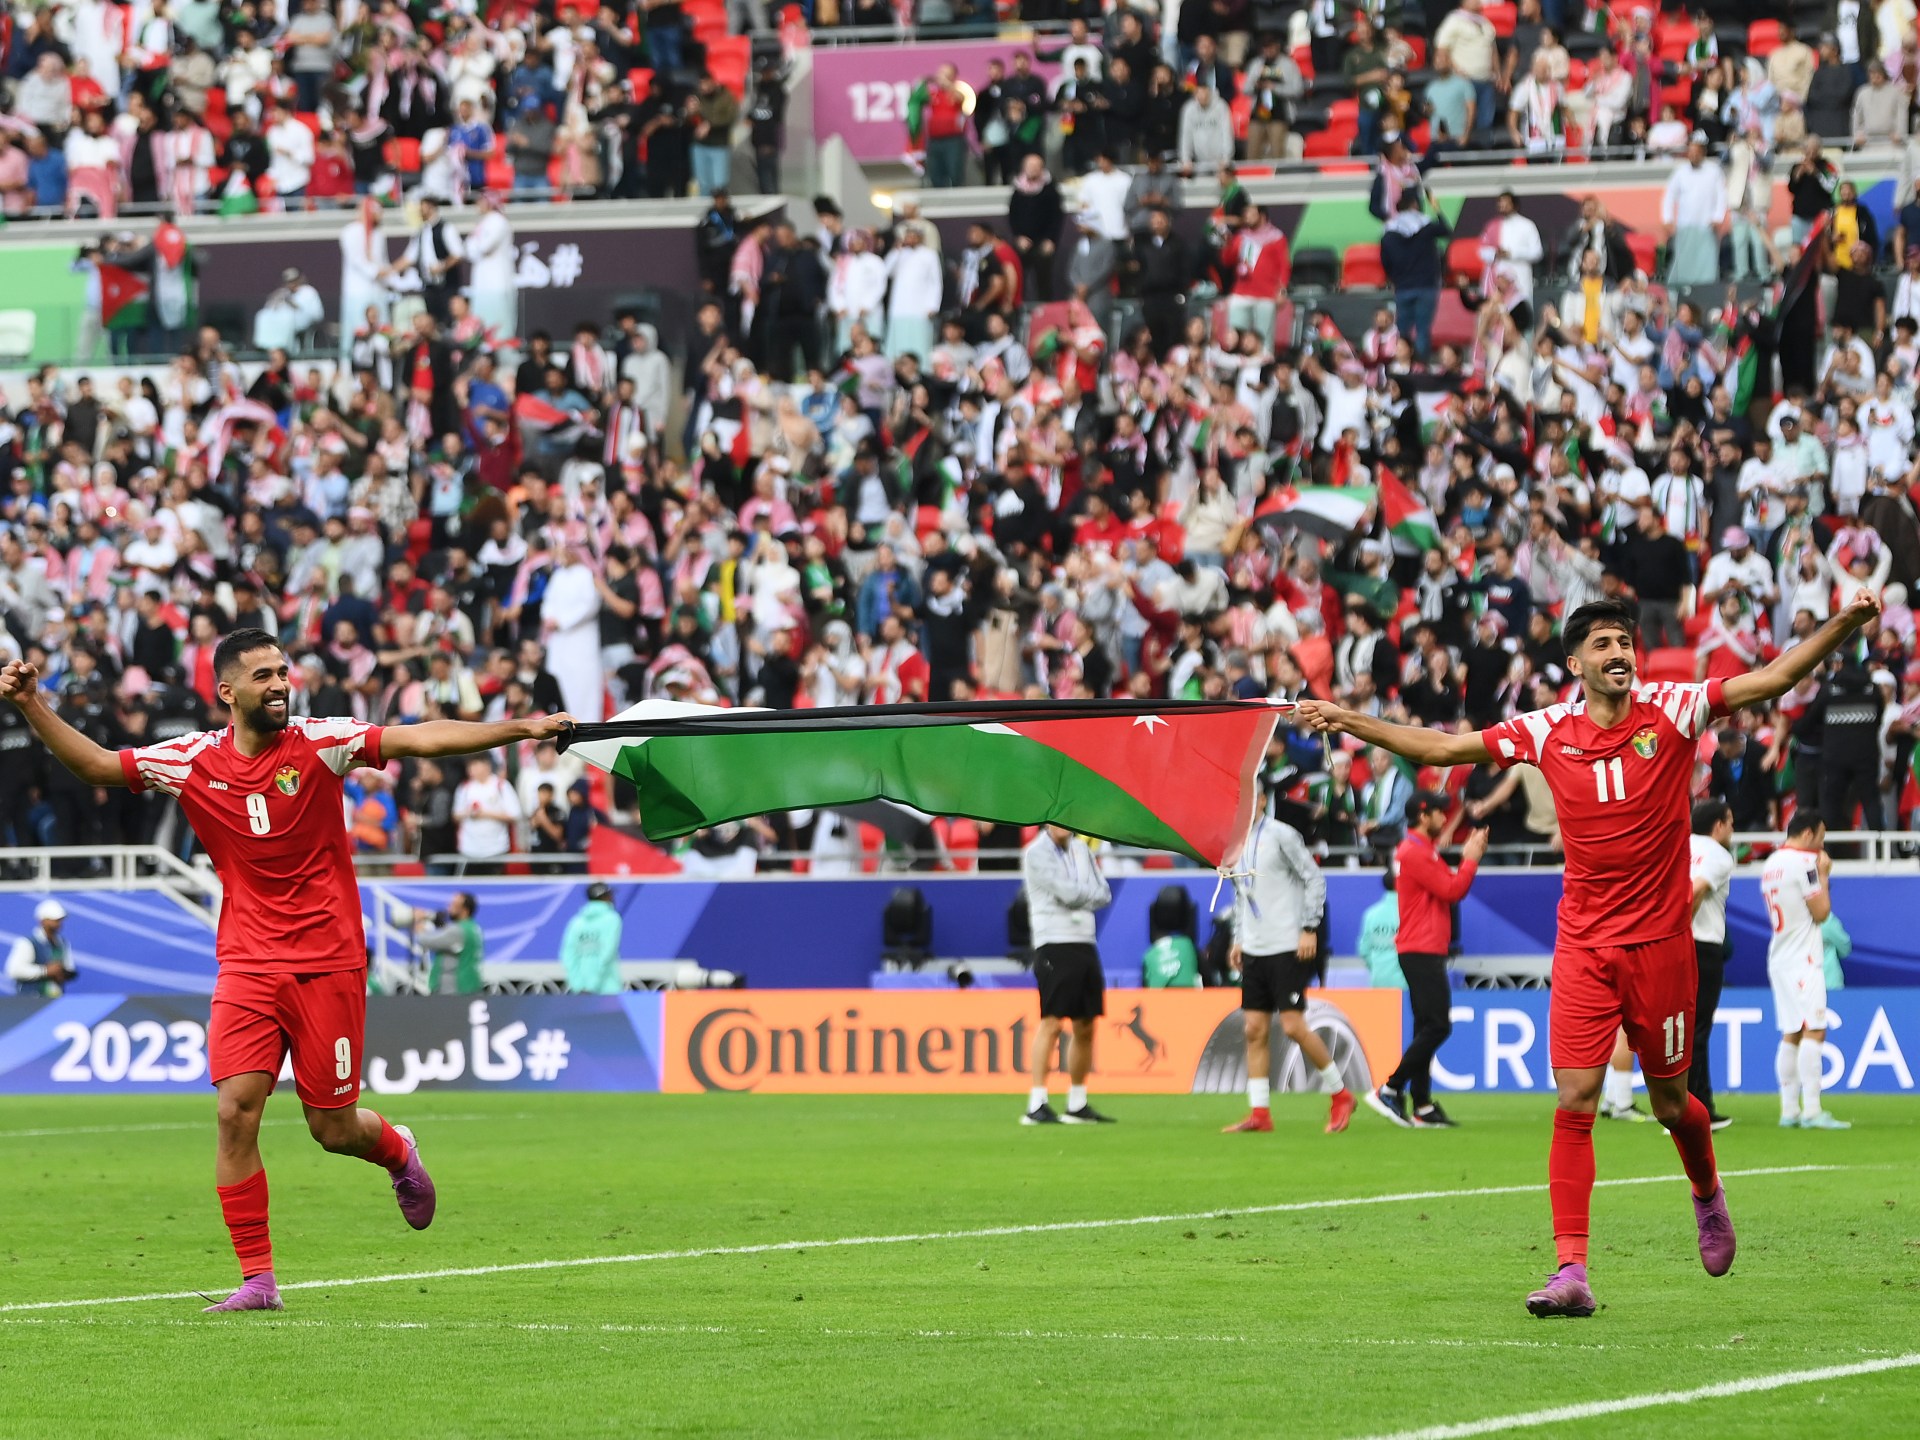 حاسوب خارق يتوقع الفائز من مواجهة الأردن وكوريا الجنوبية بنصف نهائي كأس آسيا | رياضة – البوكس نيوز